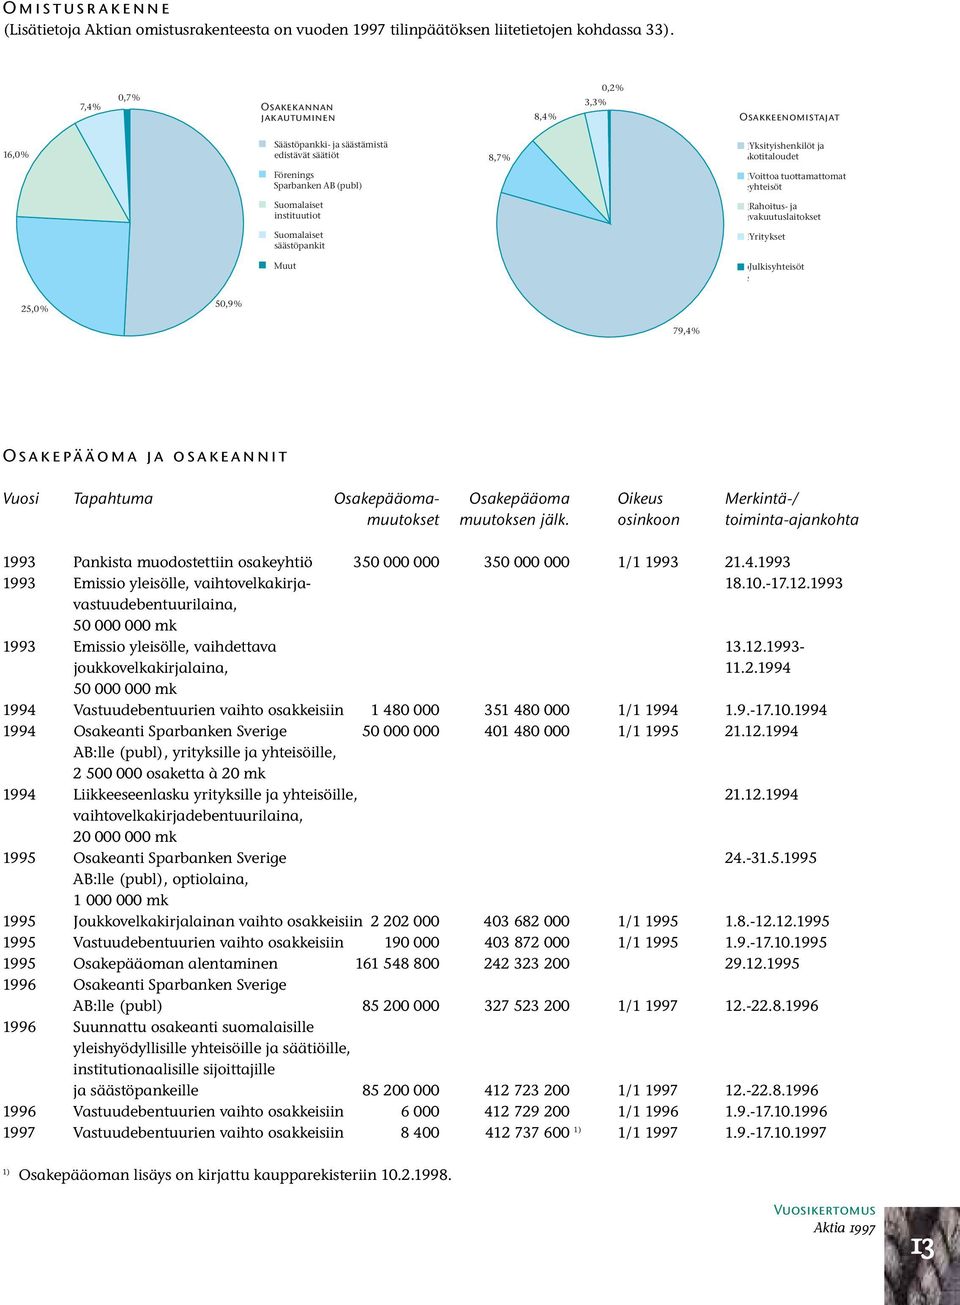 (publ) IVoittoa tuottamattomat syhteisöt Suomalaiset instituutiot FRahoitus- ja fvakuutuslaitokset Suomalaiset säästöpankit FYritykset Muut OJulkisyhteisöt s 25,0 % 50,9 % 79,4 % Osakepääoma ja